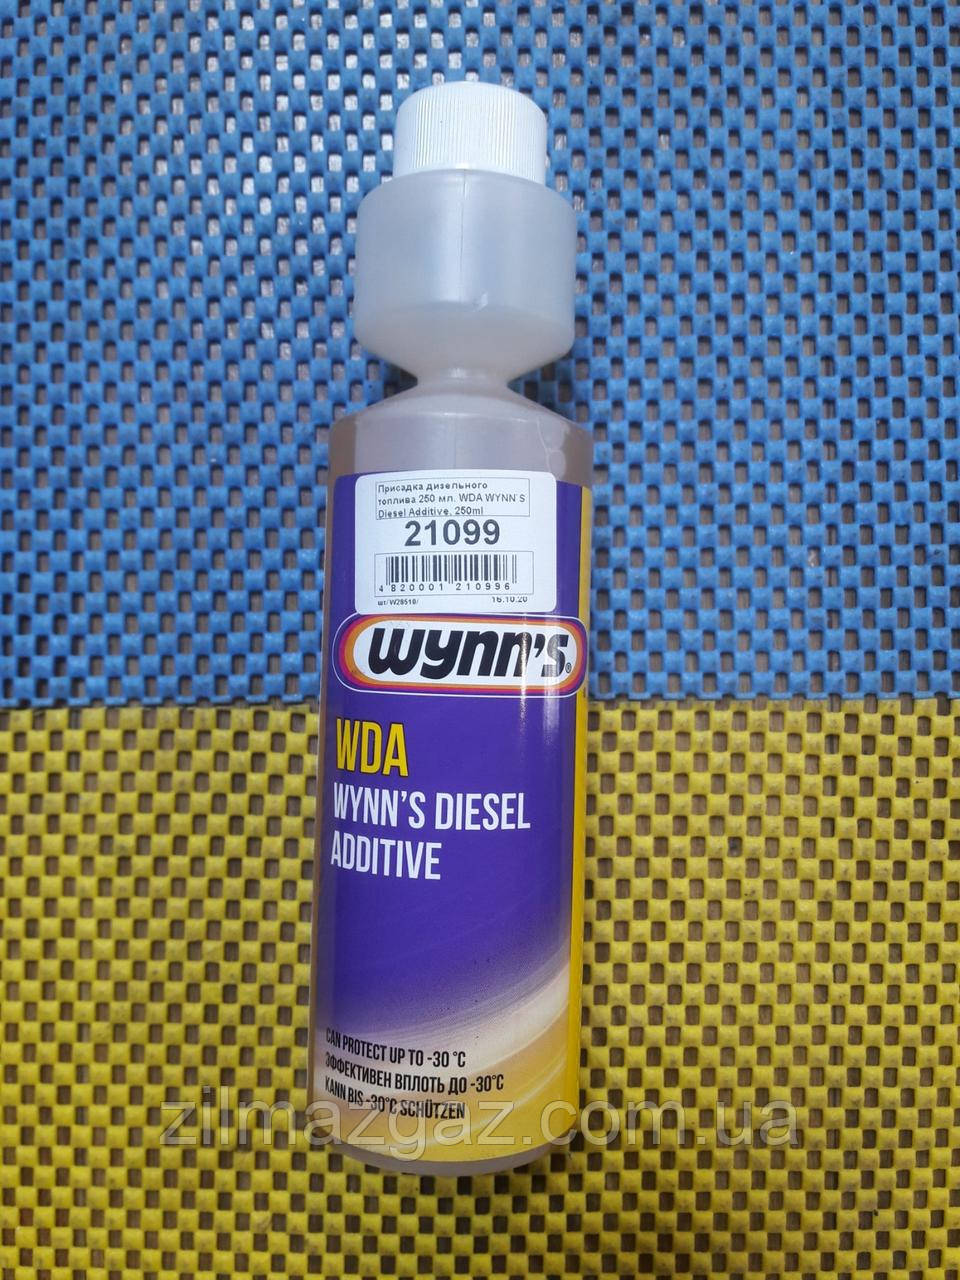 Присадка дизельного палива 250 мл WDA wynn's Diesel Additive, 250ml